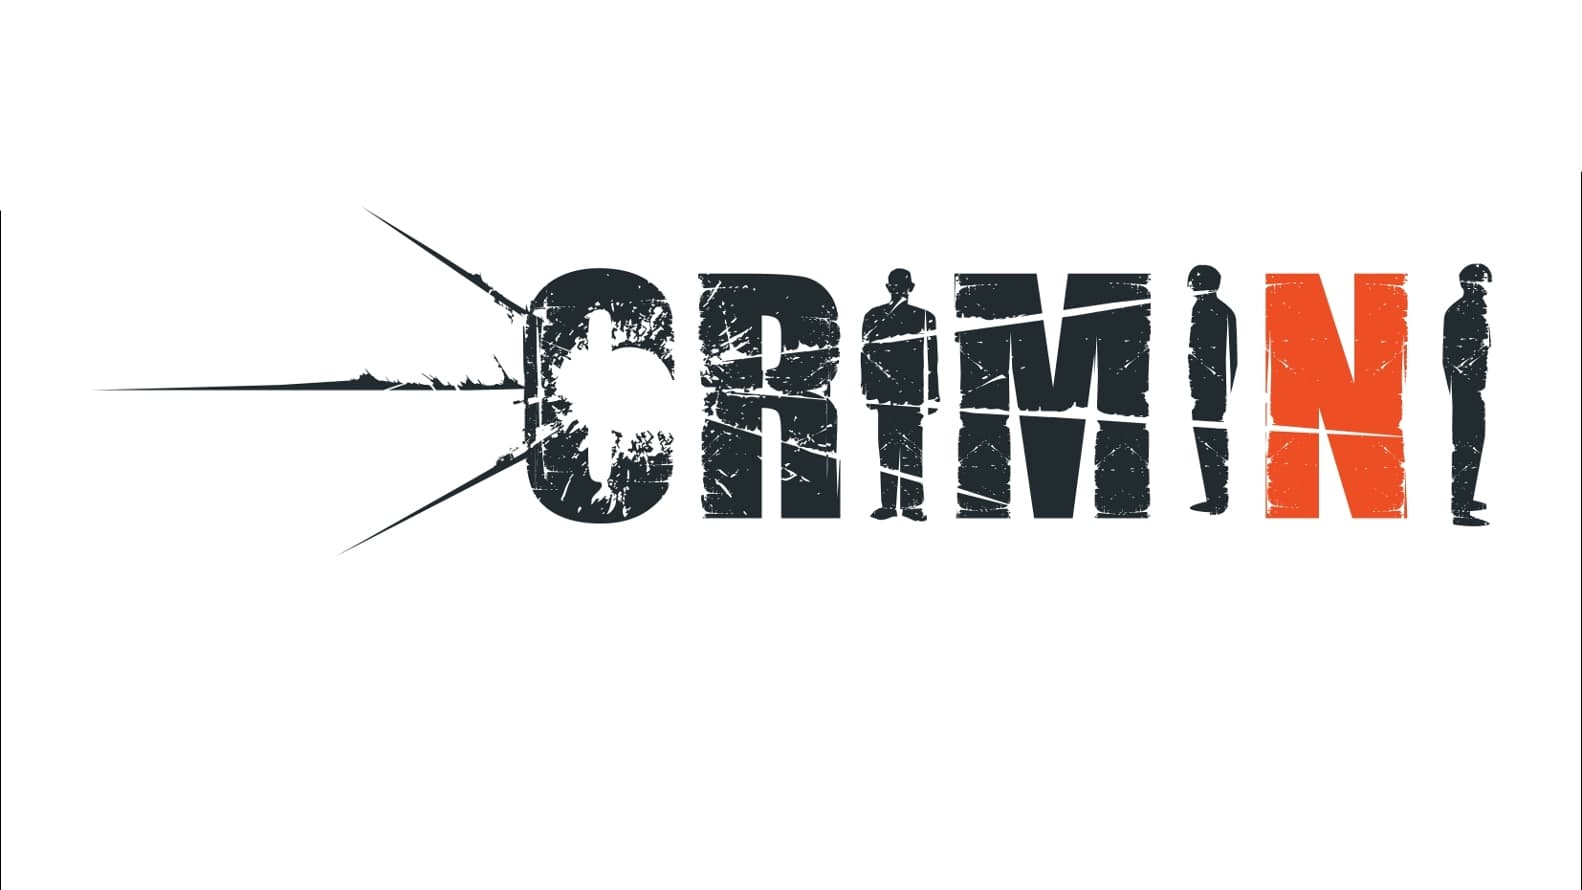 Crimini